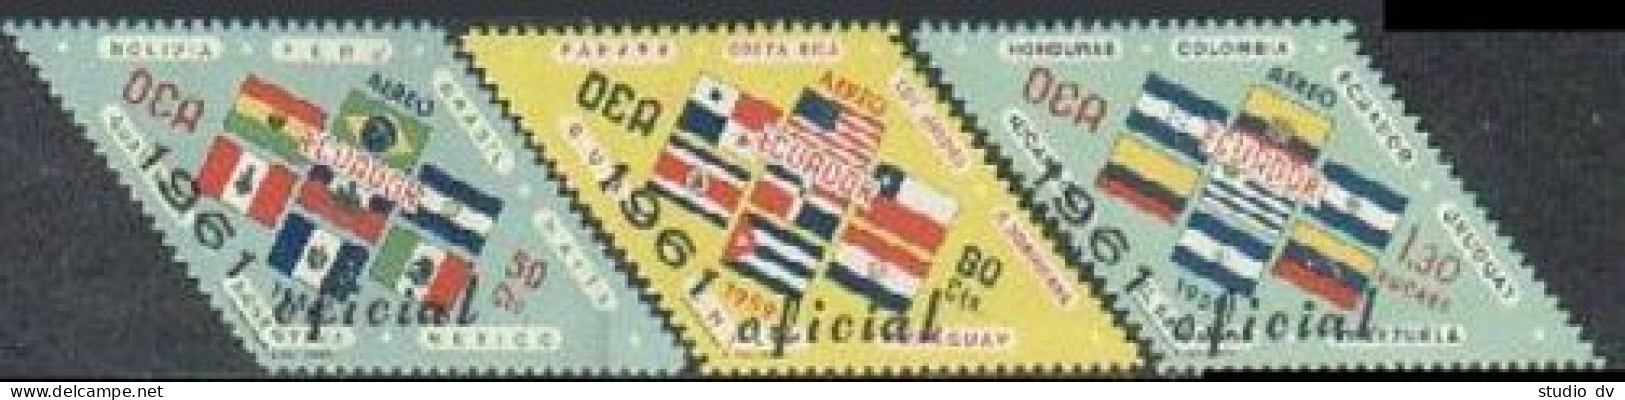 Ecuador CO19-CO21, MNH. Mi D195-D1970. Official 1964. OAS-Flags. Official 1961. - Equateur